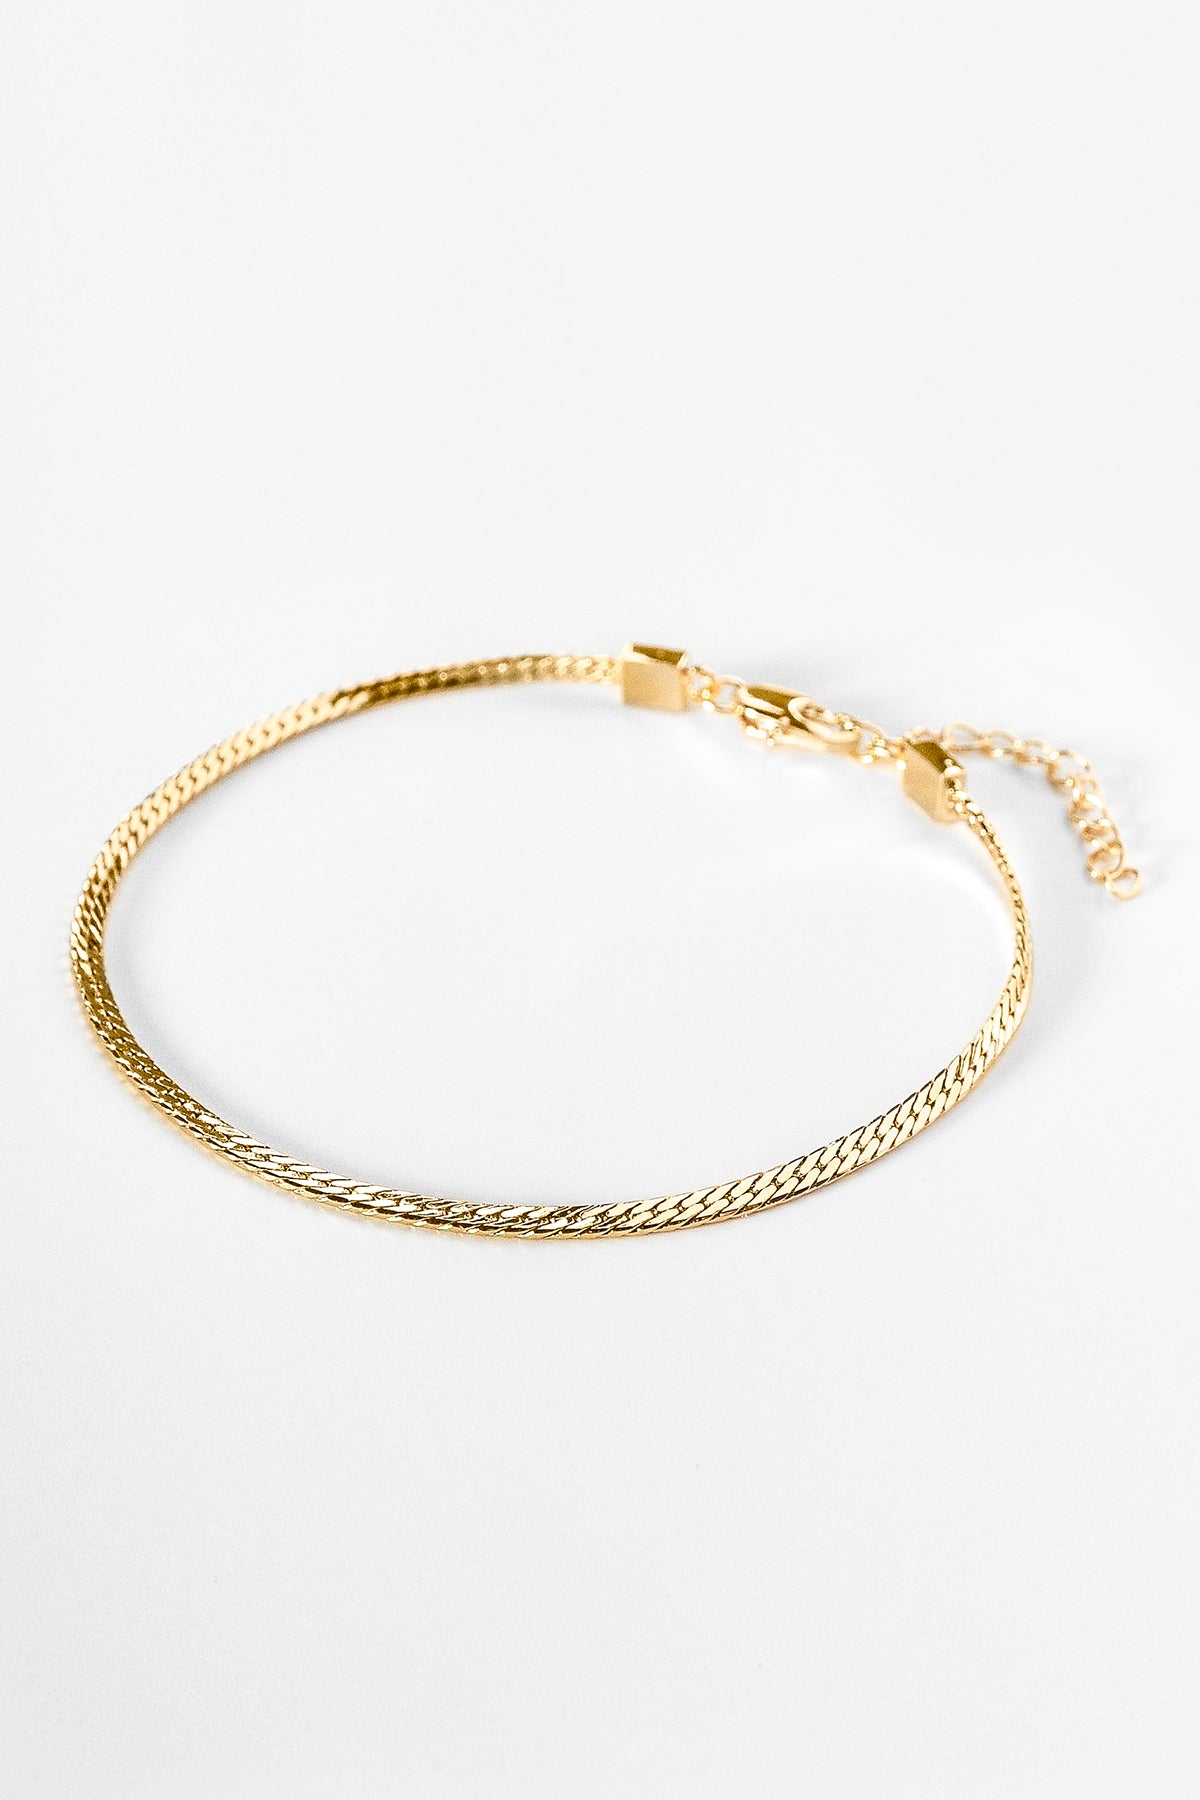 Mini Dani Bracelet Gold by Thatch-23749402558657